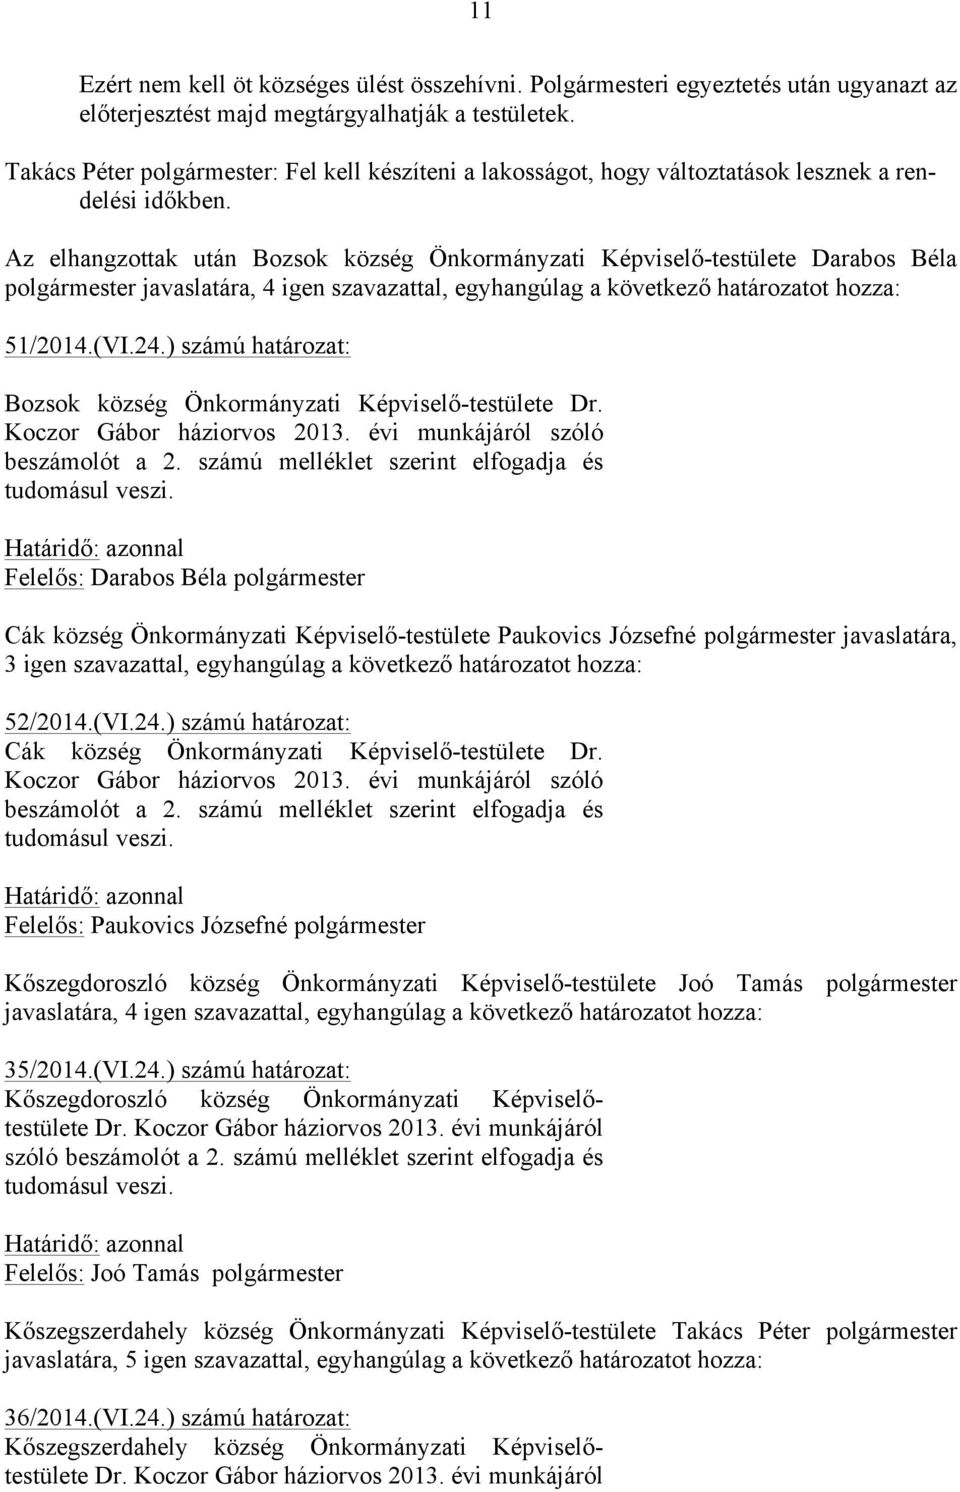 Az elhangzottak után Bozsok község Önkormányzati Képviselő-testülete Darabos Béla polgármester javaslatára, 4 igen szavazattal, egyhangúlag a következő határozatot hozza: 51/2014.(VI.24.